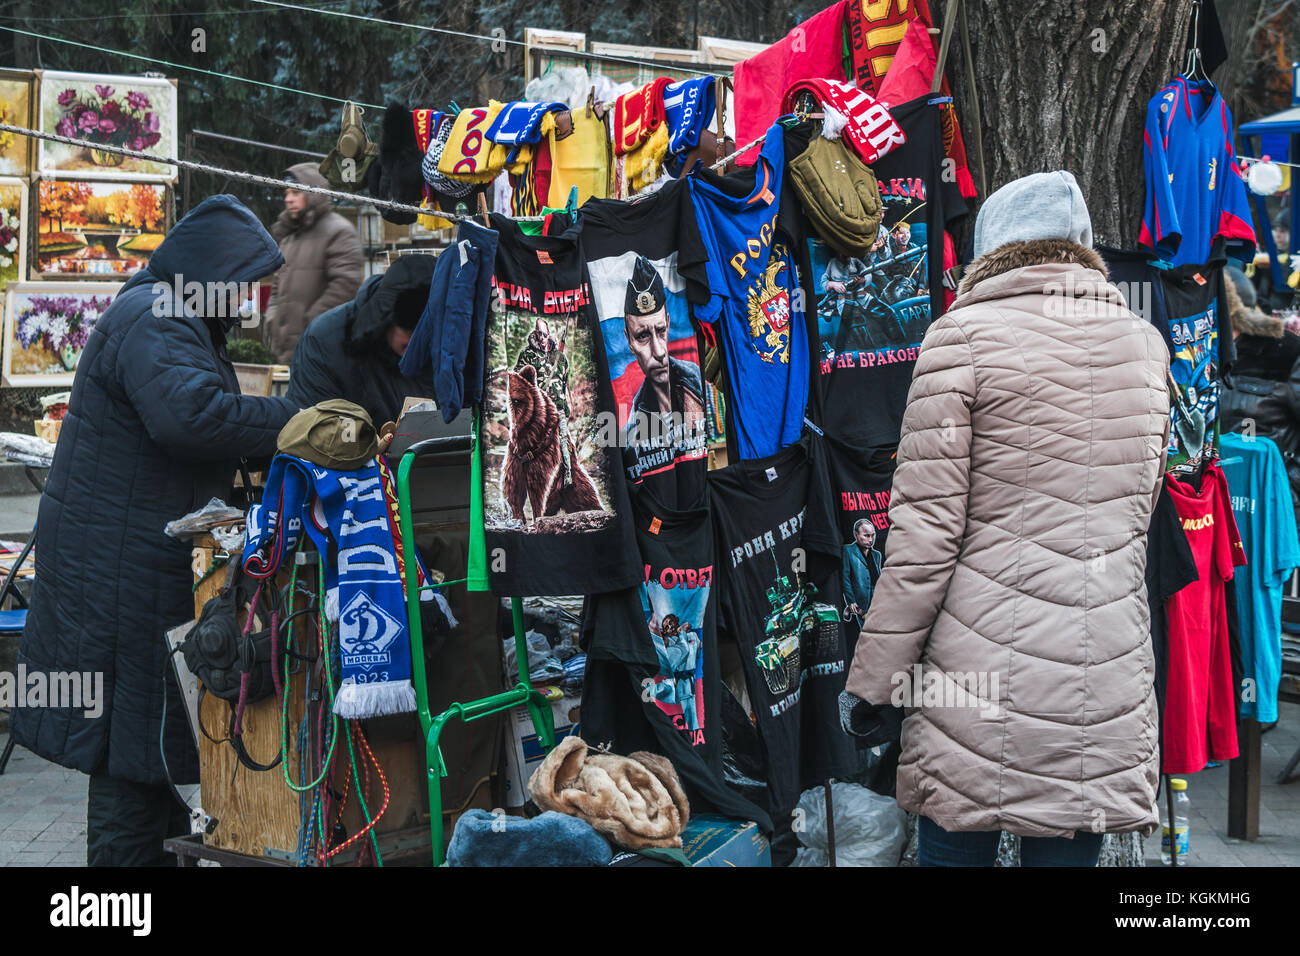 Woman t-shirts avec Vladimir Poutine dans un petit marché dans le centre de Chisinau, République de Moldova, Décembre 2015 Banque D'Images